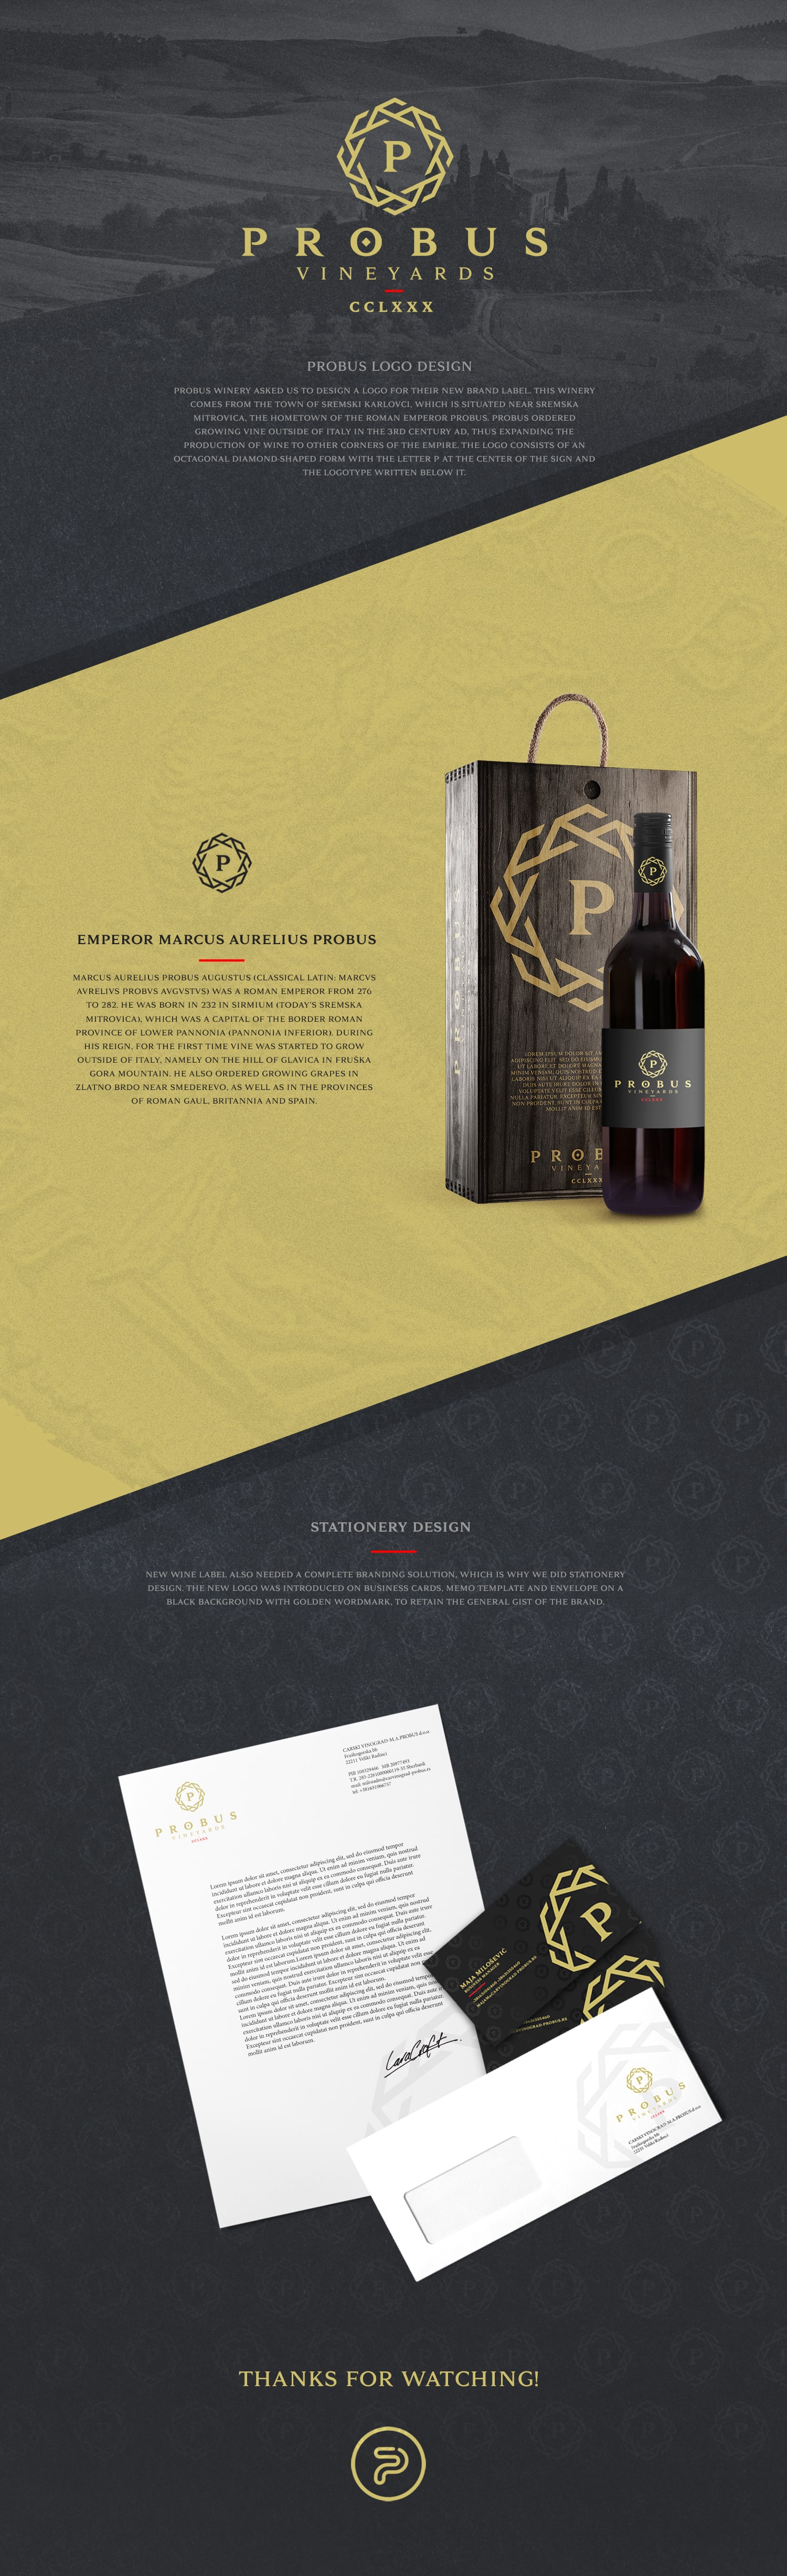 probus wine label design